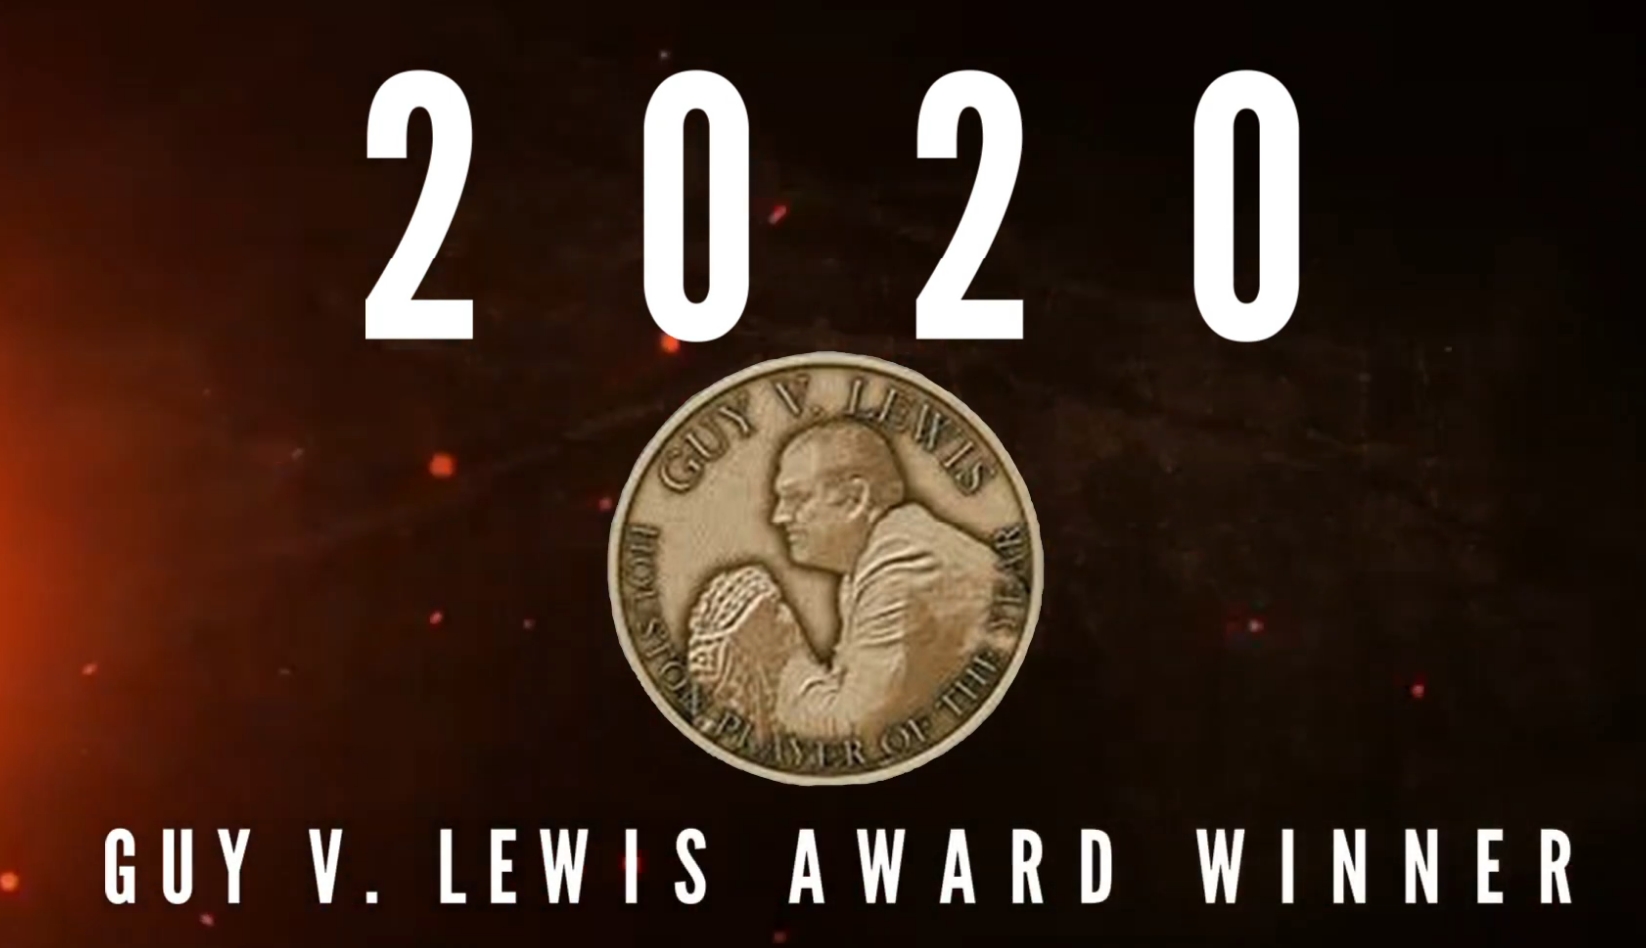 Guy V. Lewis 2020 Award Winner Announcement